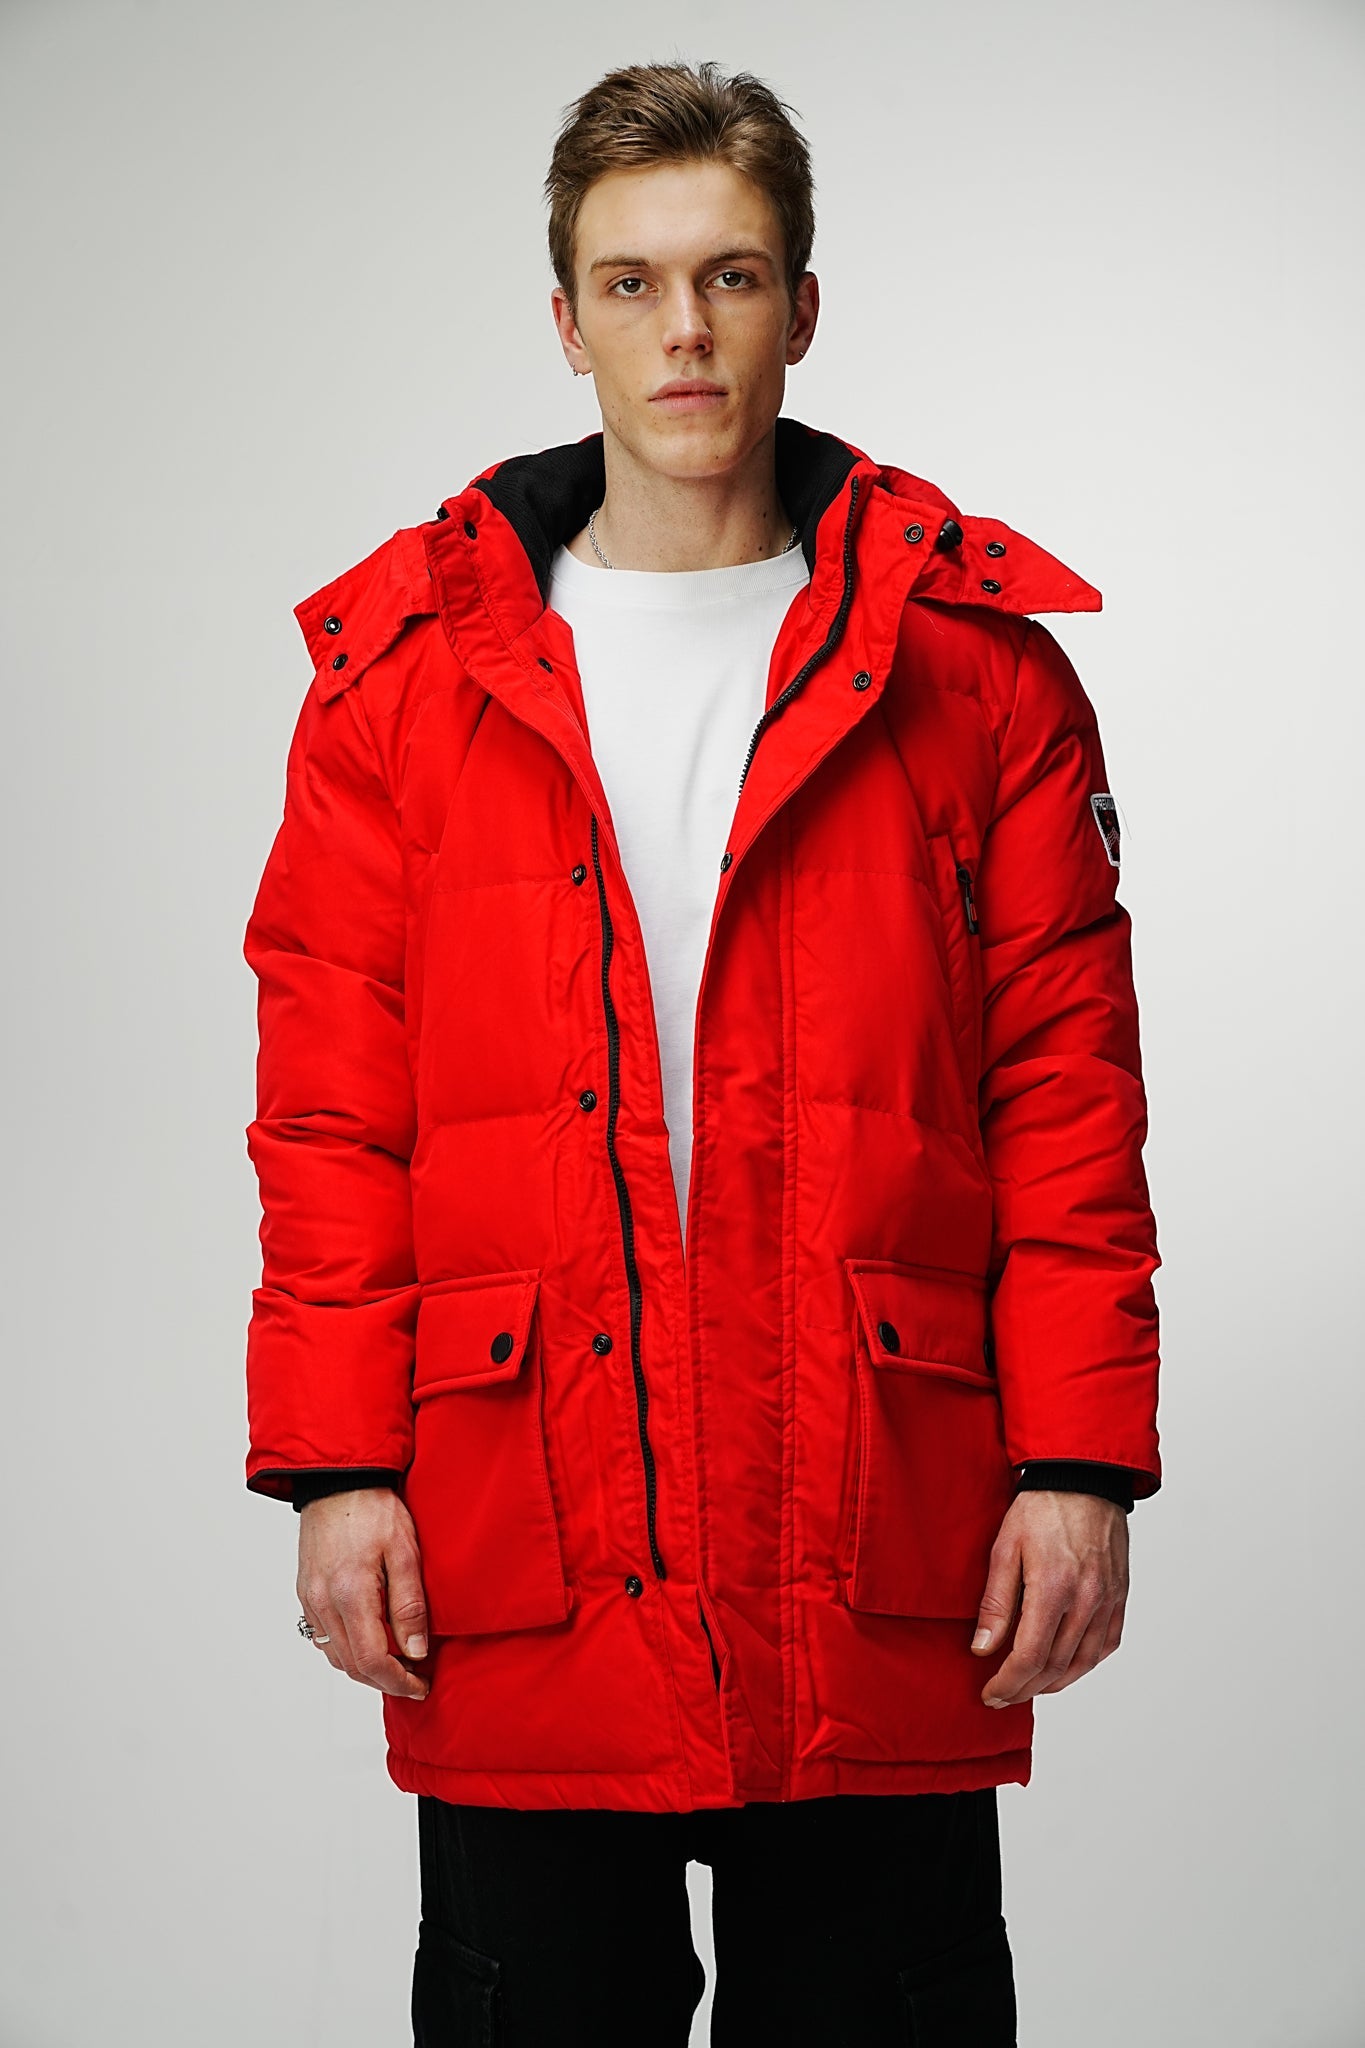 Heavy Red Winter Jacket - UNEFFECTED STUDIOS® - JACKET - UNEFFECTED